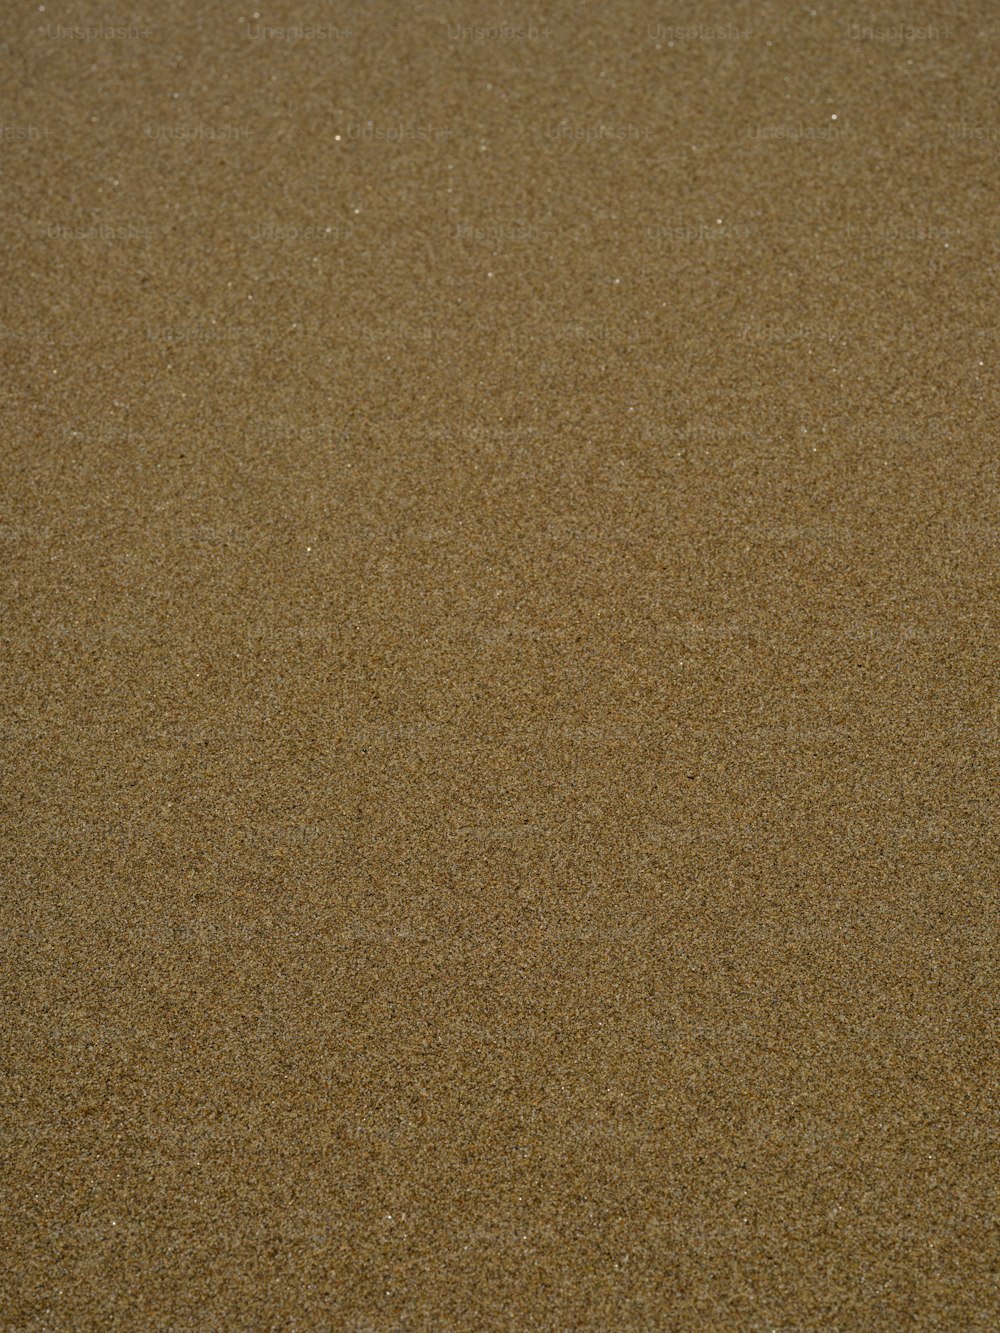 새가 해변의 모래에 서 있다